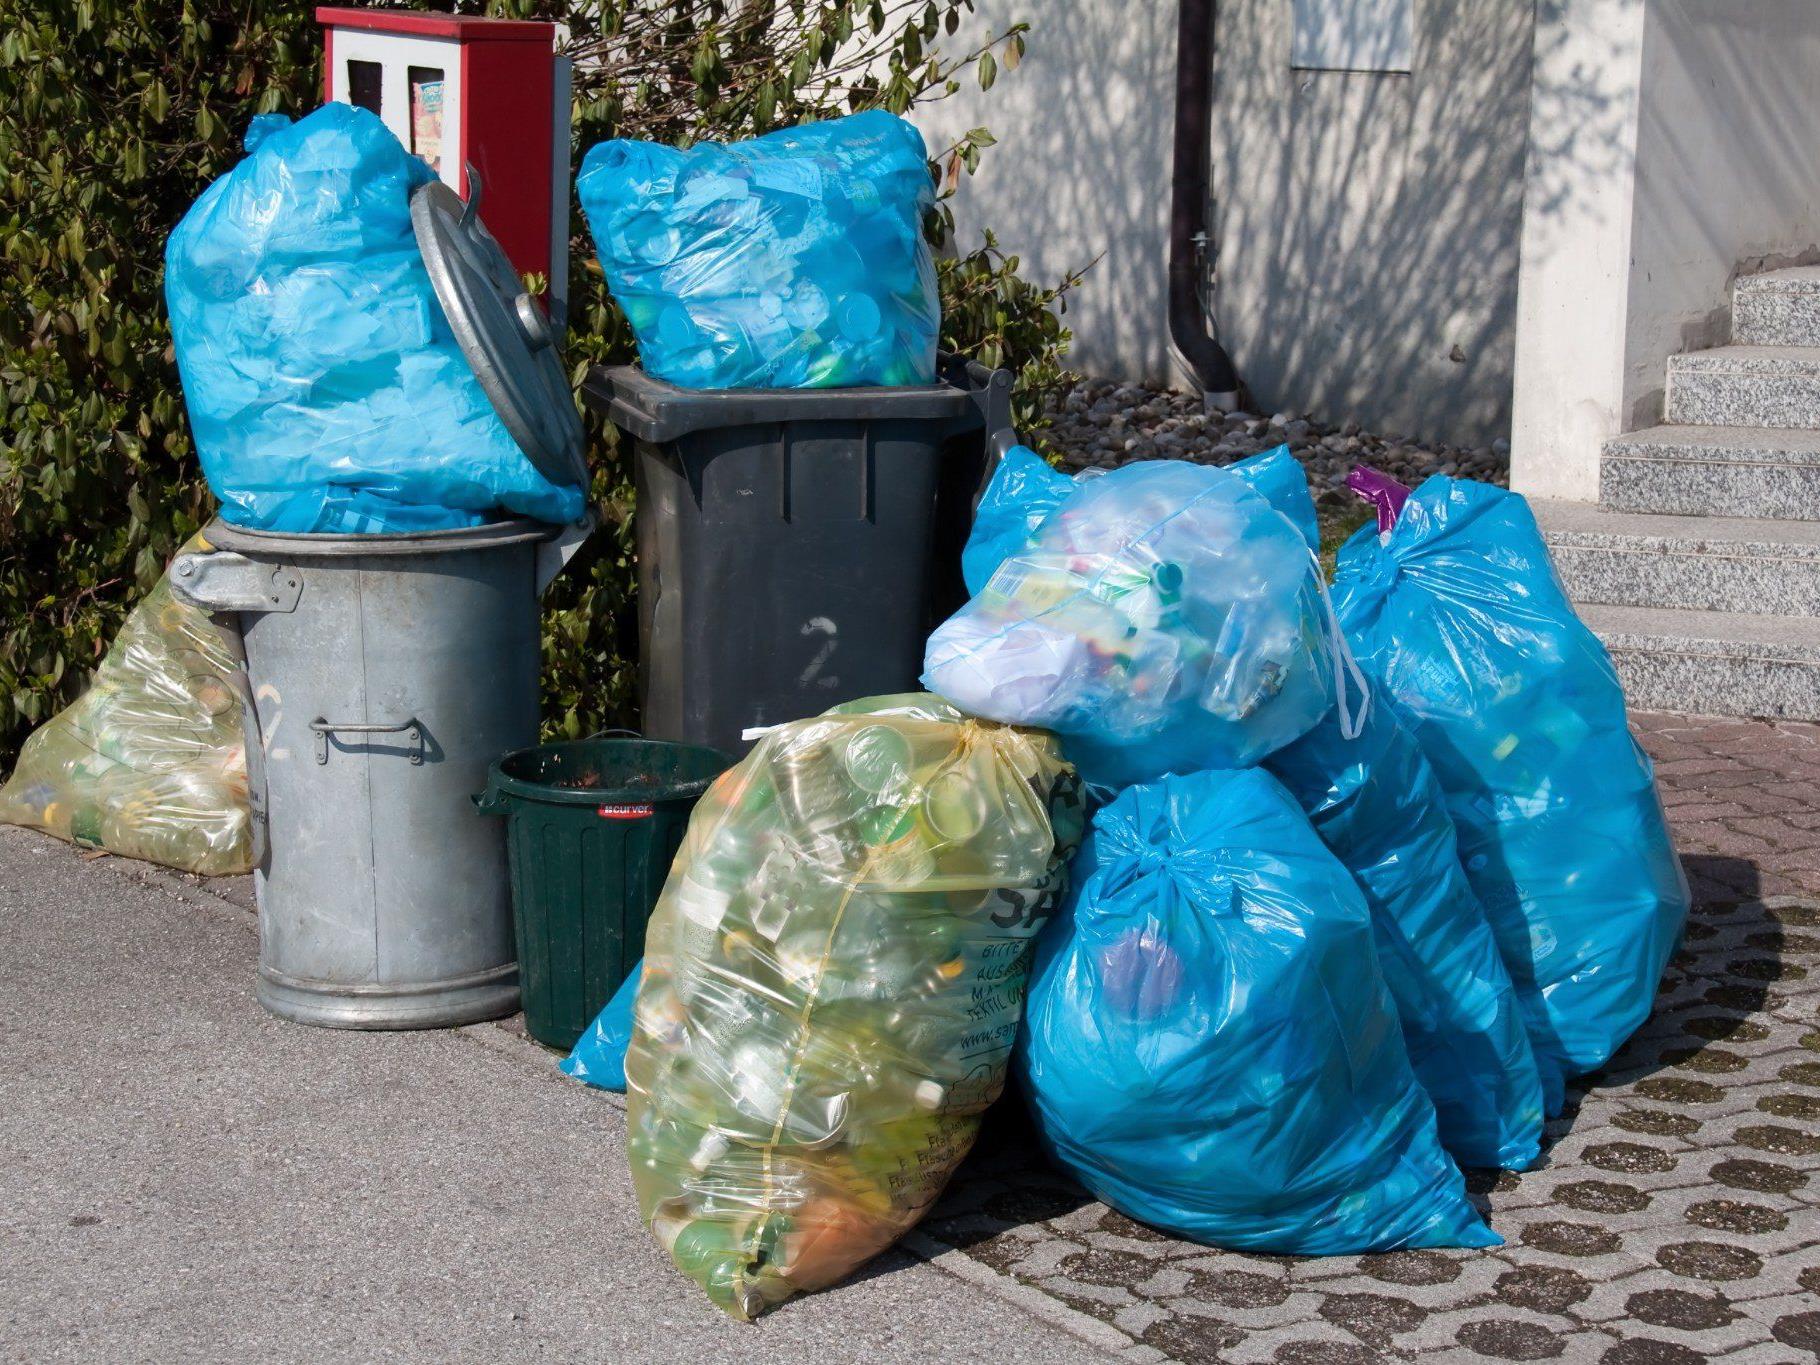 Die Müllmänner hatten zu viel Abfall entsorgt - und landeten vor Gericht